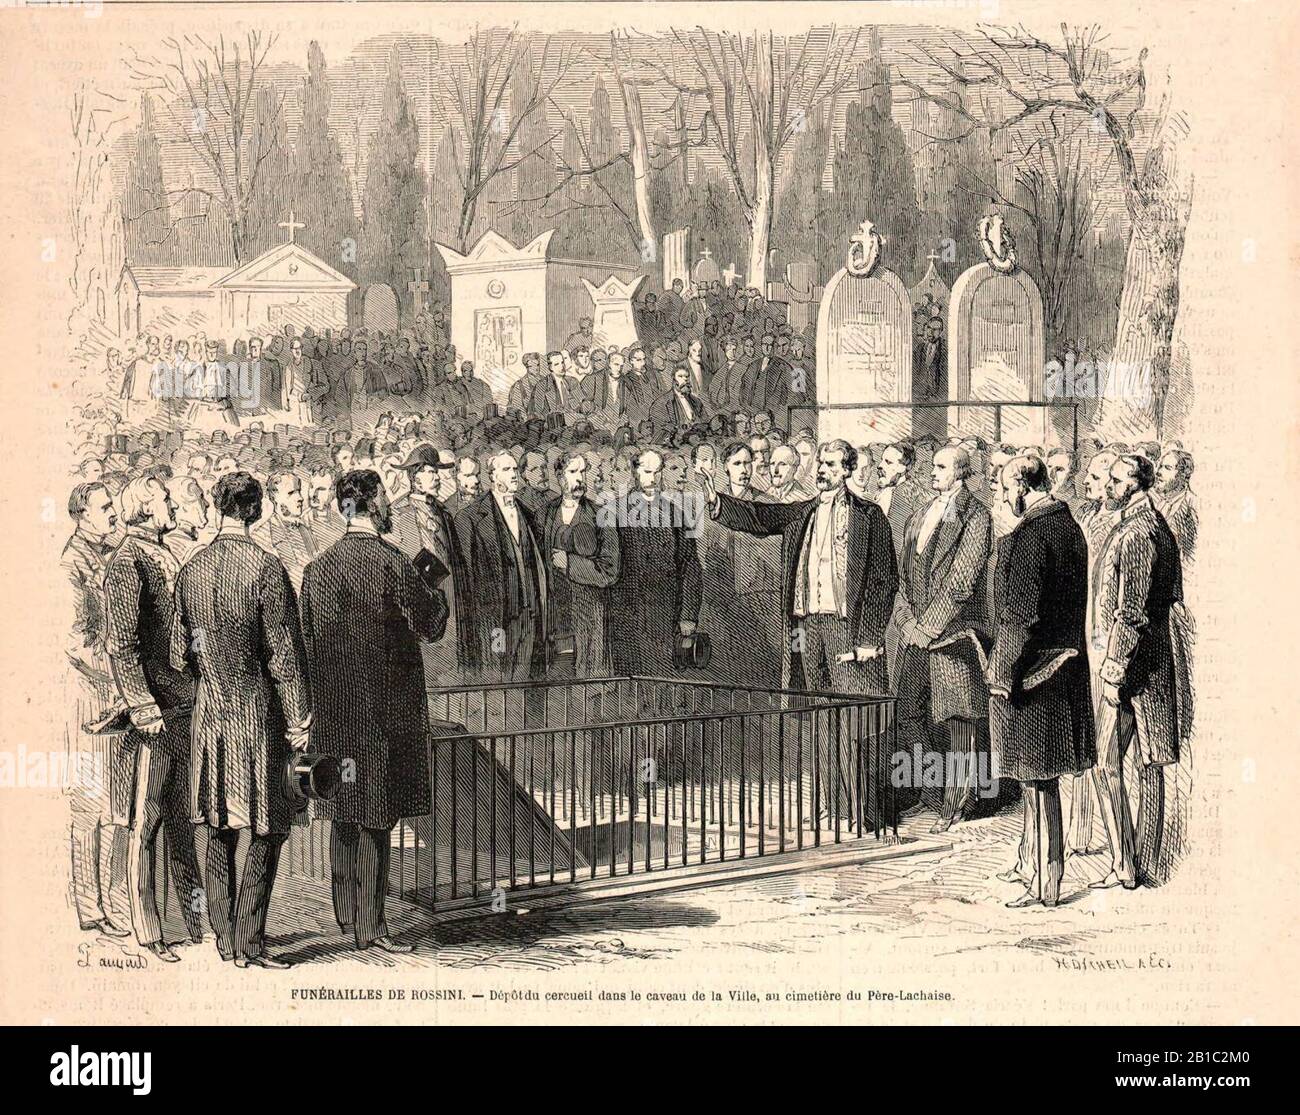 Funérailles de Rossini - Dépôt du cercueil dans le caveau de la Ville, au cimetière du Père-Lachaise. Stock Photo